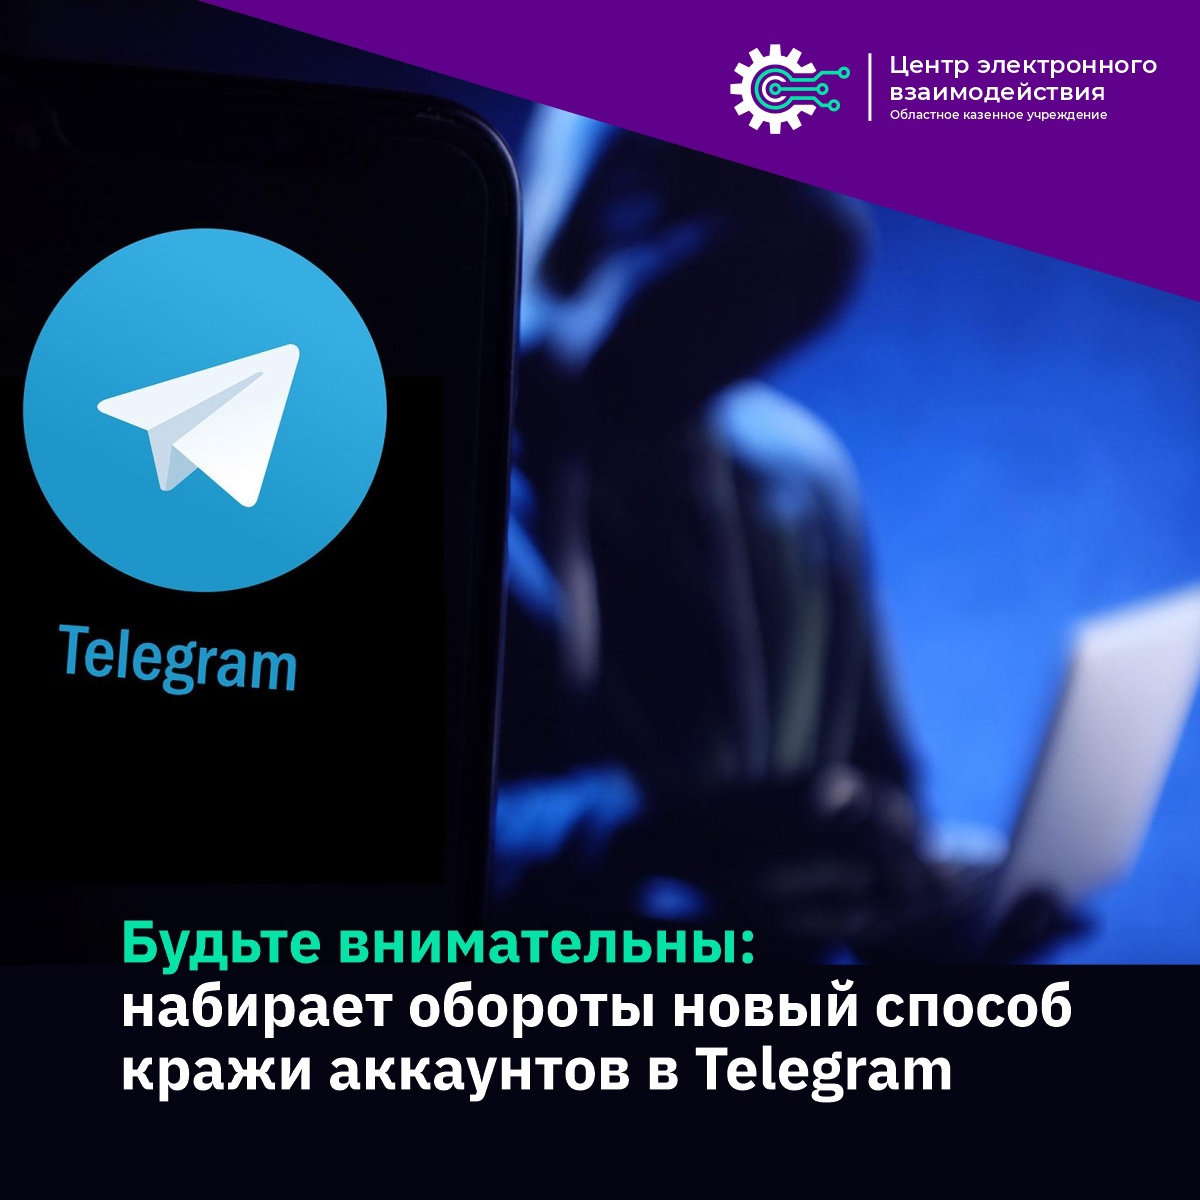 Внимание, набирает обороты новый способ кражи аккаунтов в Telegram 